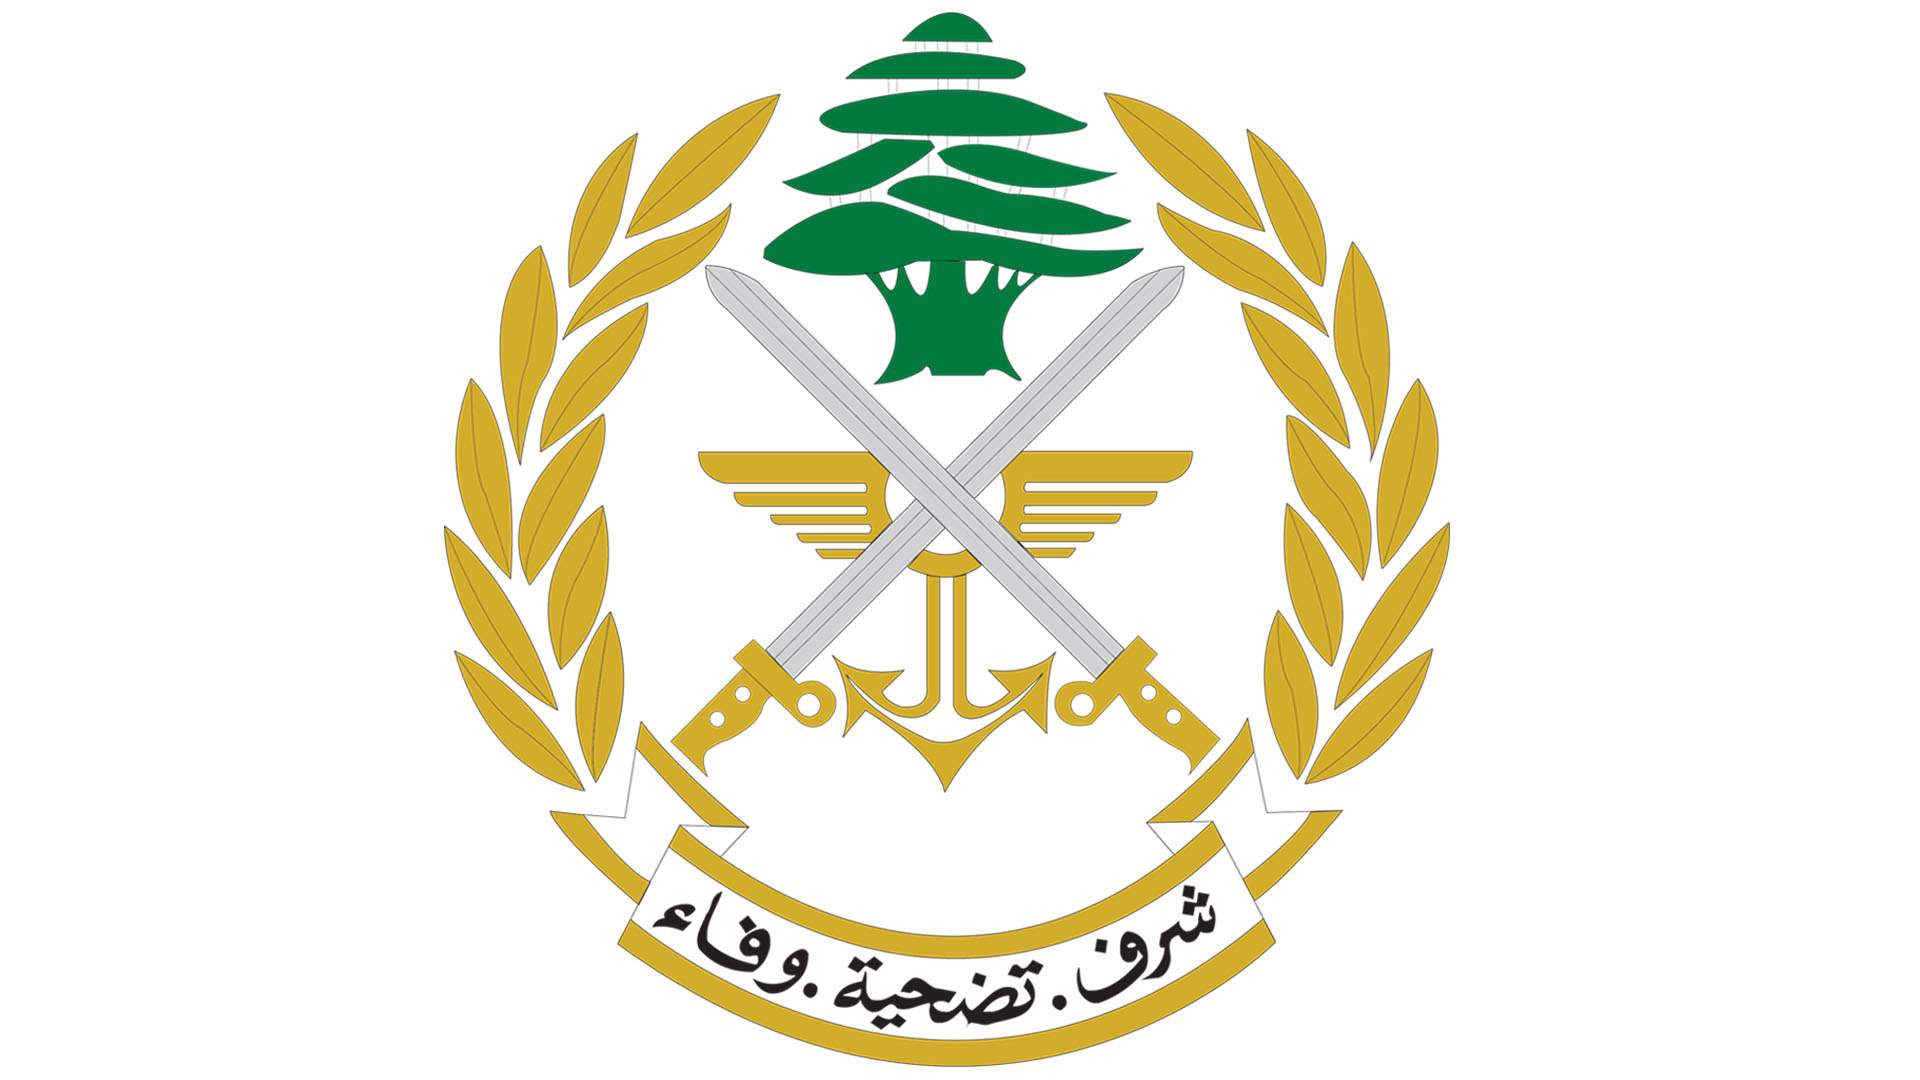 الجيش اللبناني: تحرير مواطن عراقي بعد خطفه في مدينة بيروت